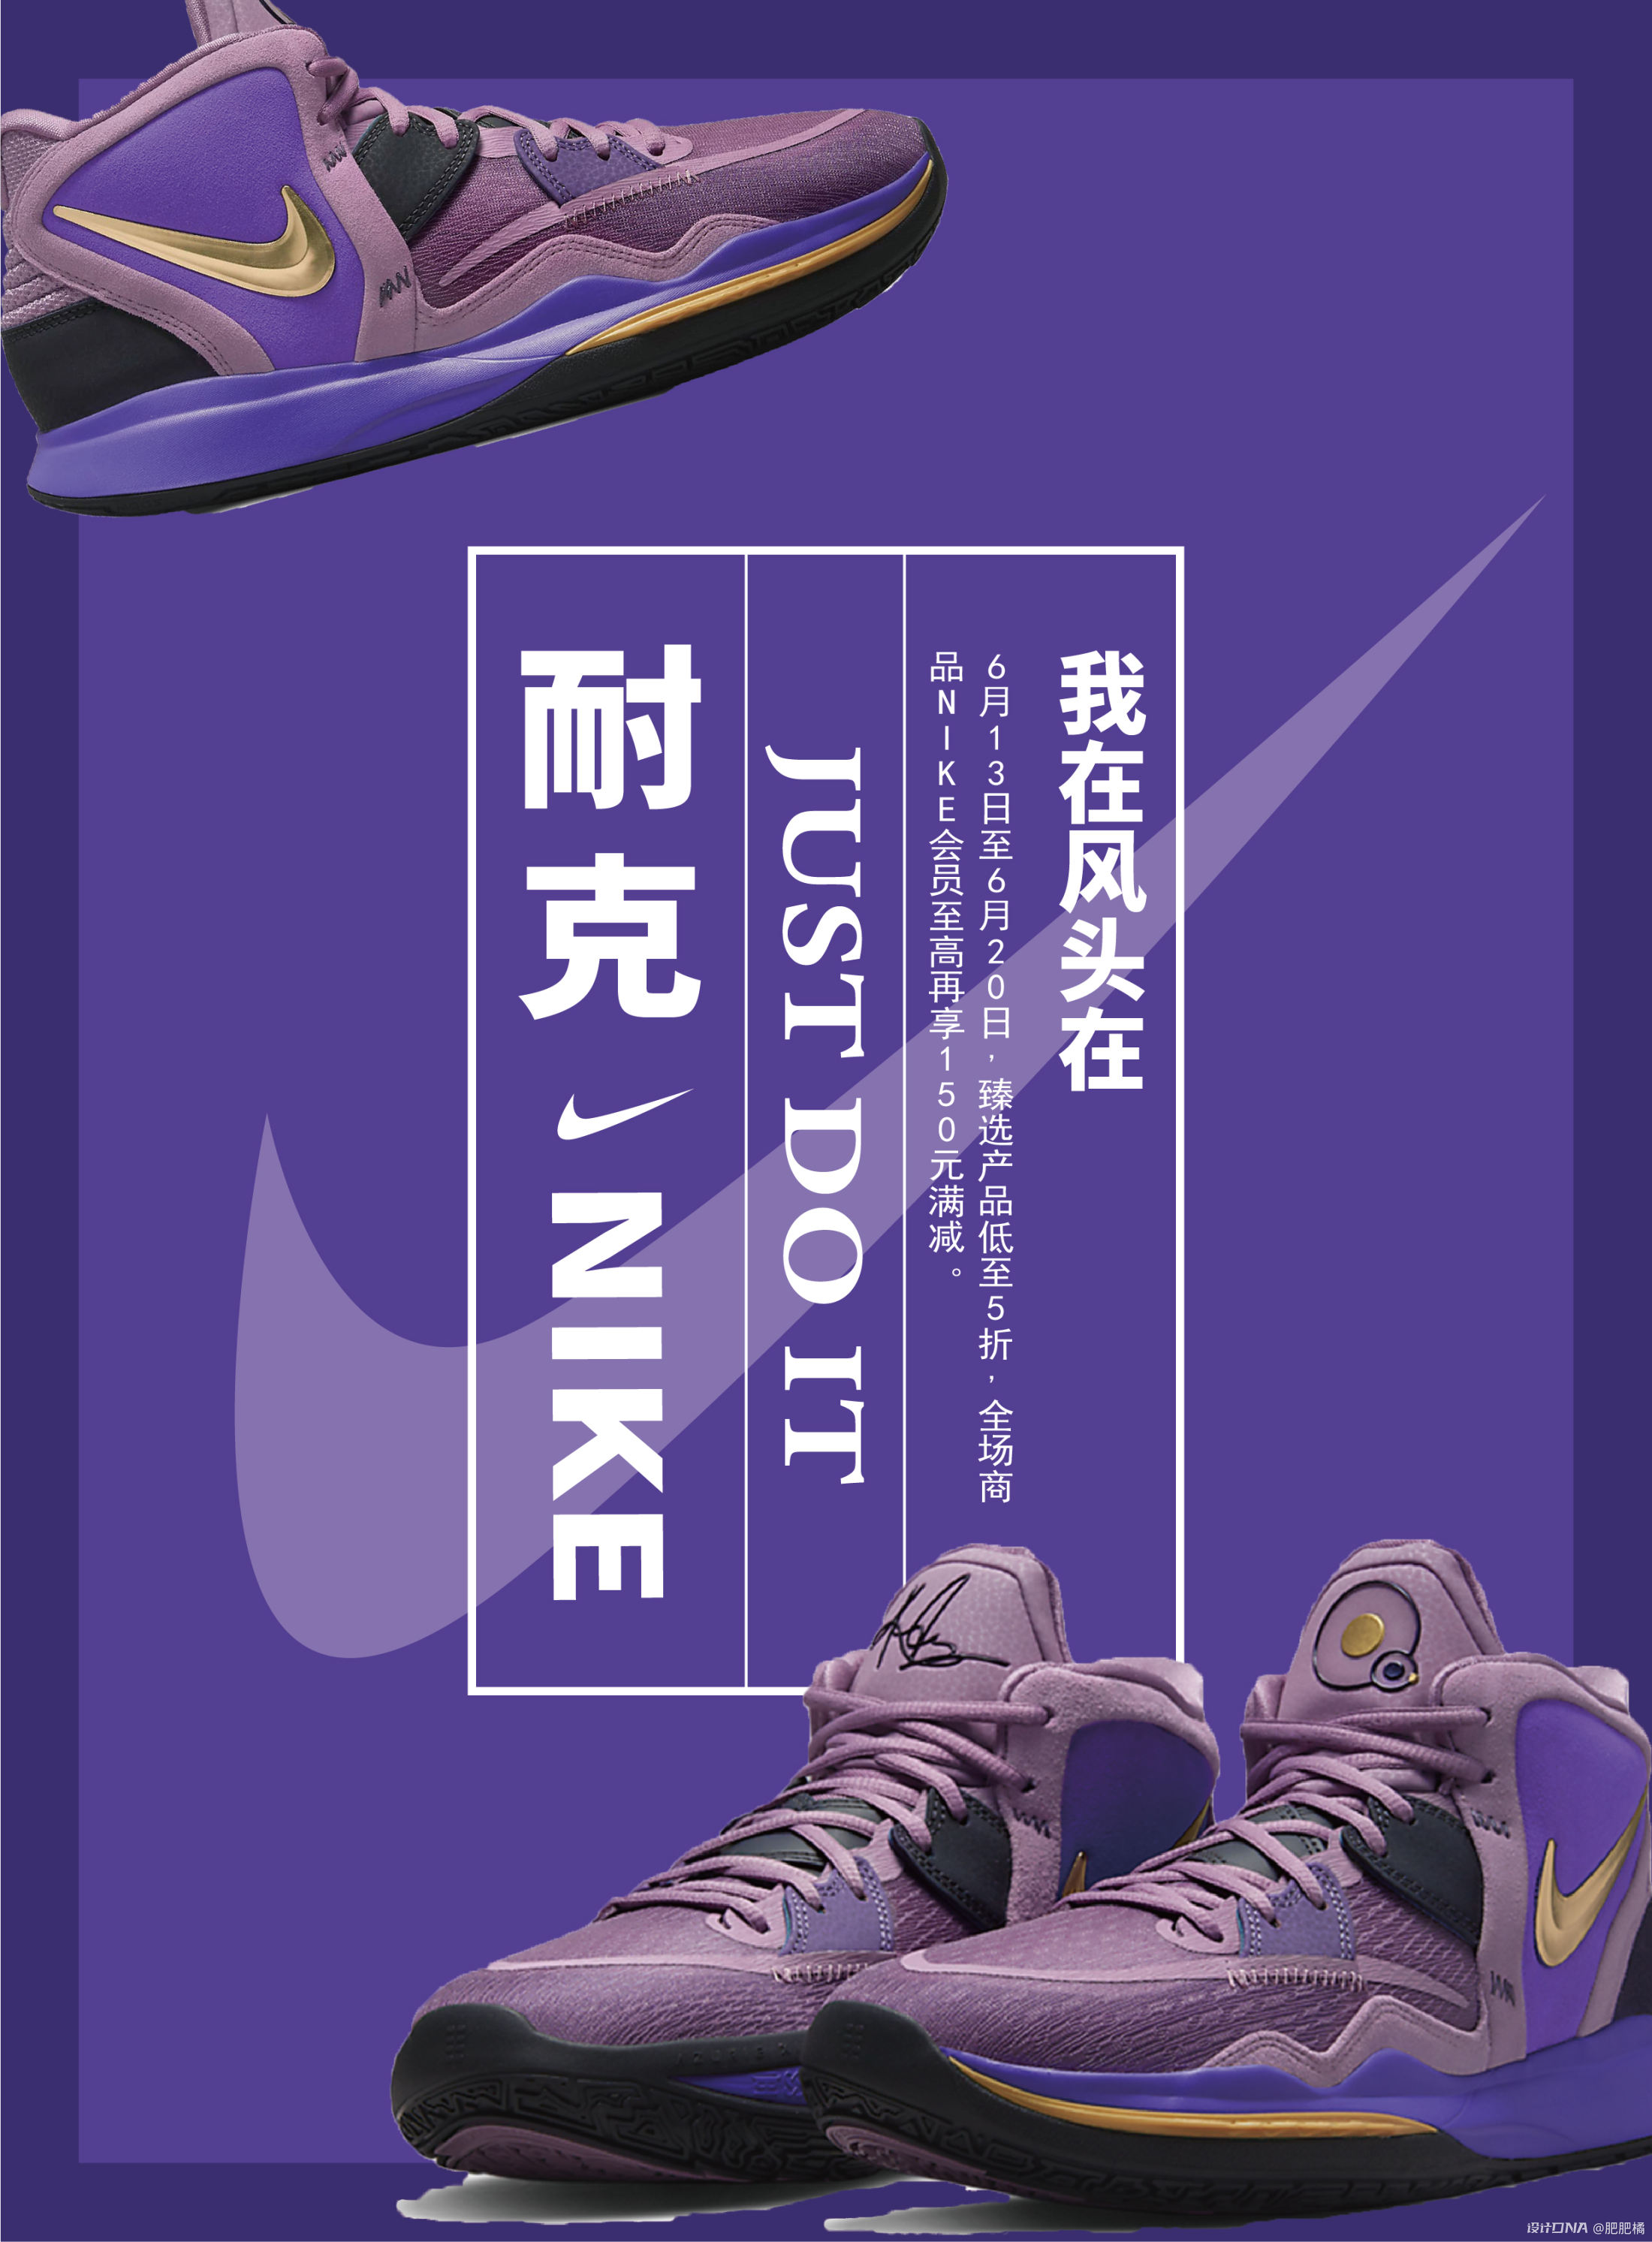 耐克推出限量版Mercurial Superfly VII - Nike_耐克足球鞋 - SoccerBible中文站_足球鞋_PDS情报站